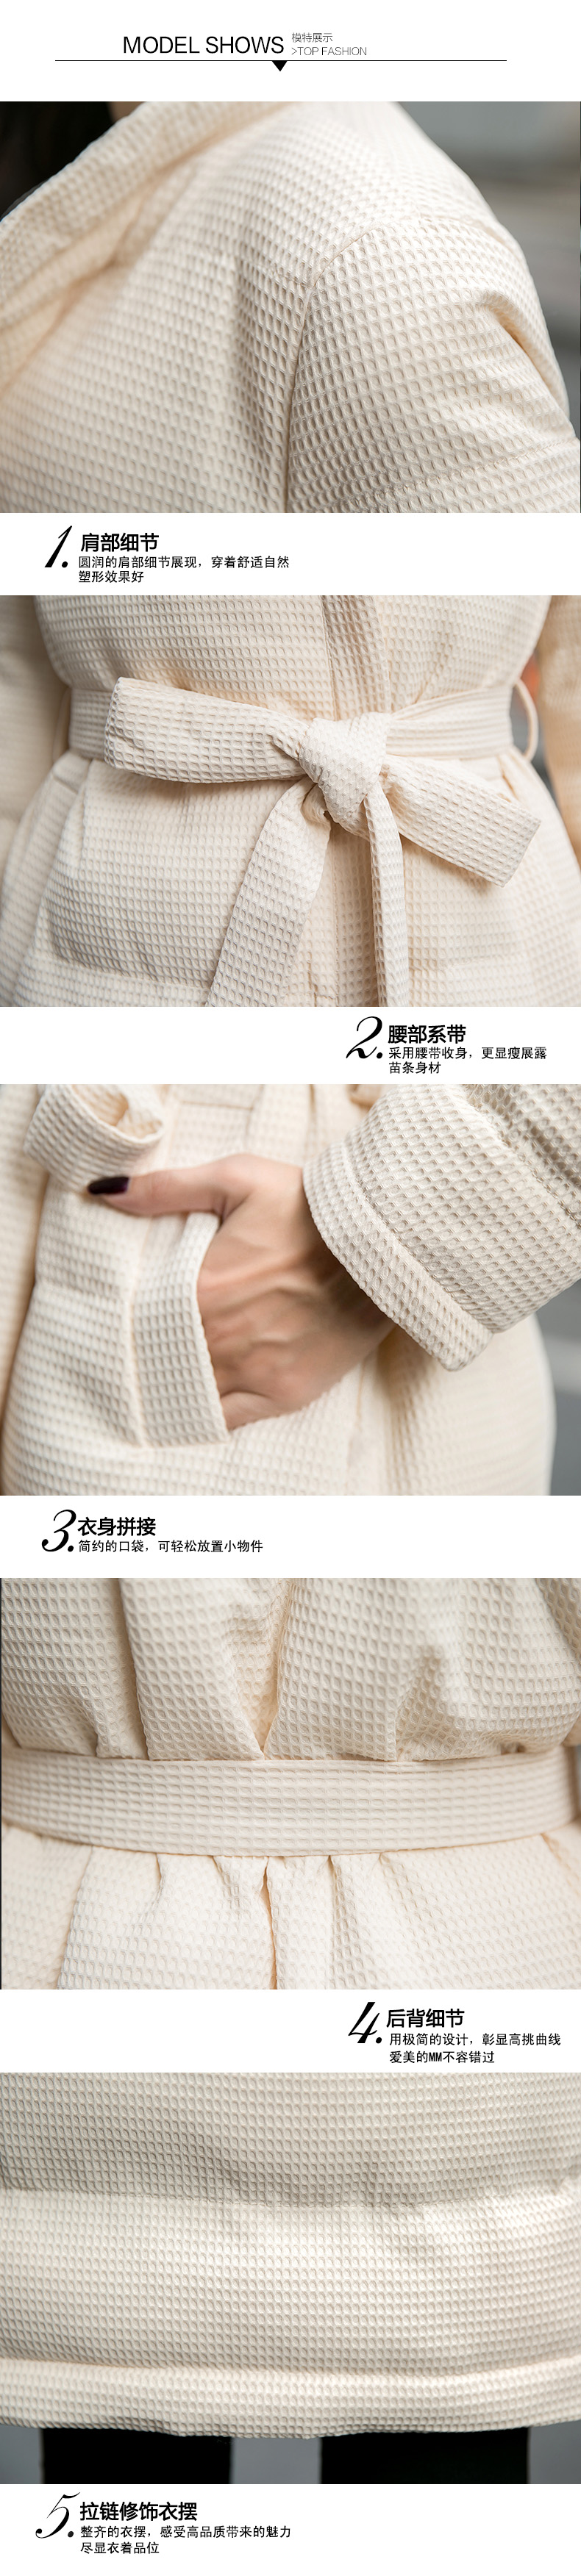 2016冬装显瘦气质甜美女装正品新款修身棉衣棉服外套